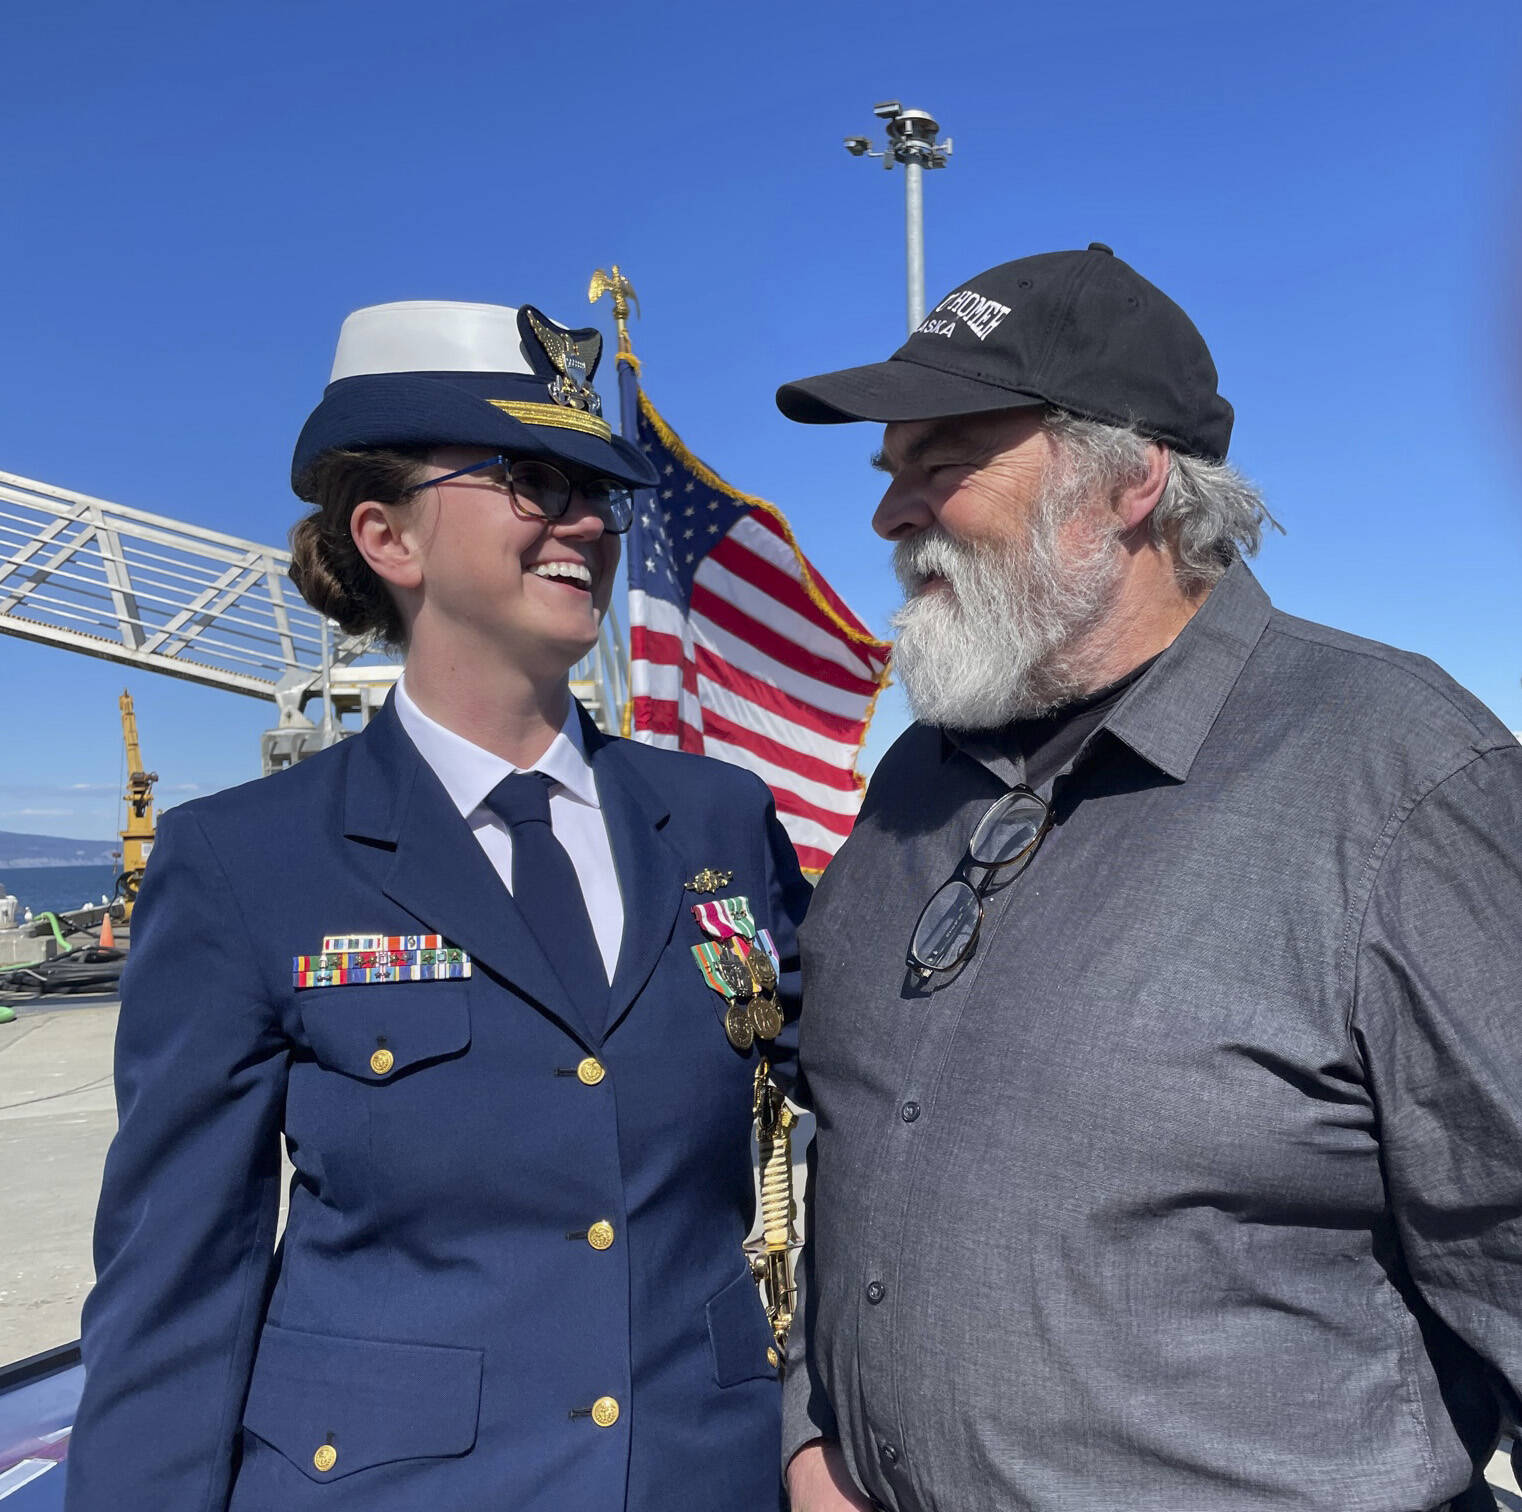 Lt. Commander Shea Winterberger is welcomed to Homer, Alaska, by Homer Mayor Ken Castner at change of command ceremonies on May 19, 2022. (Photo by McKibben Jackinsky)